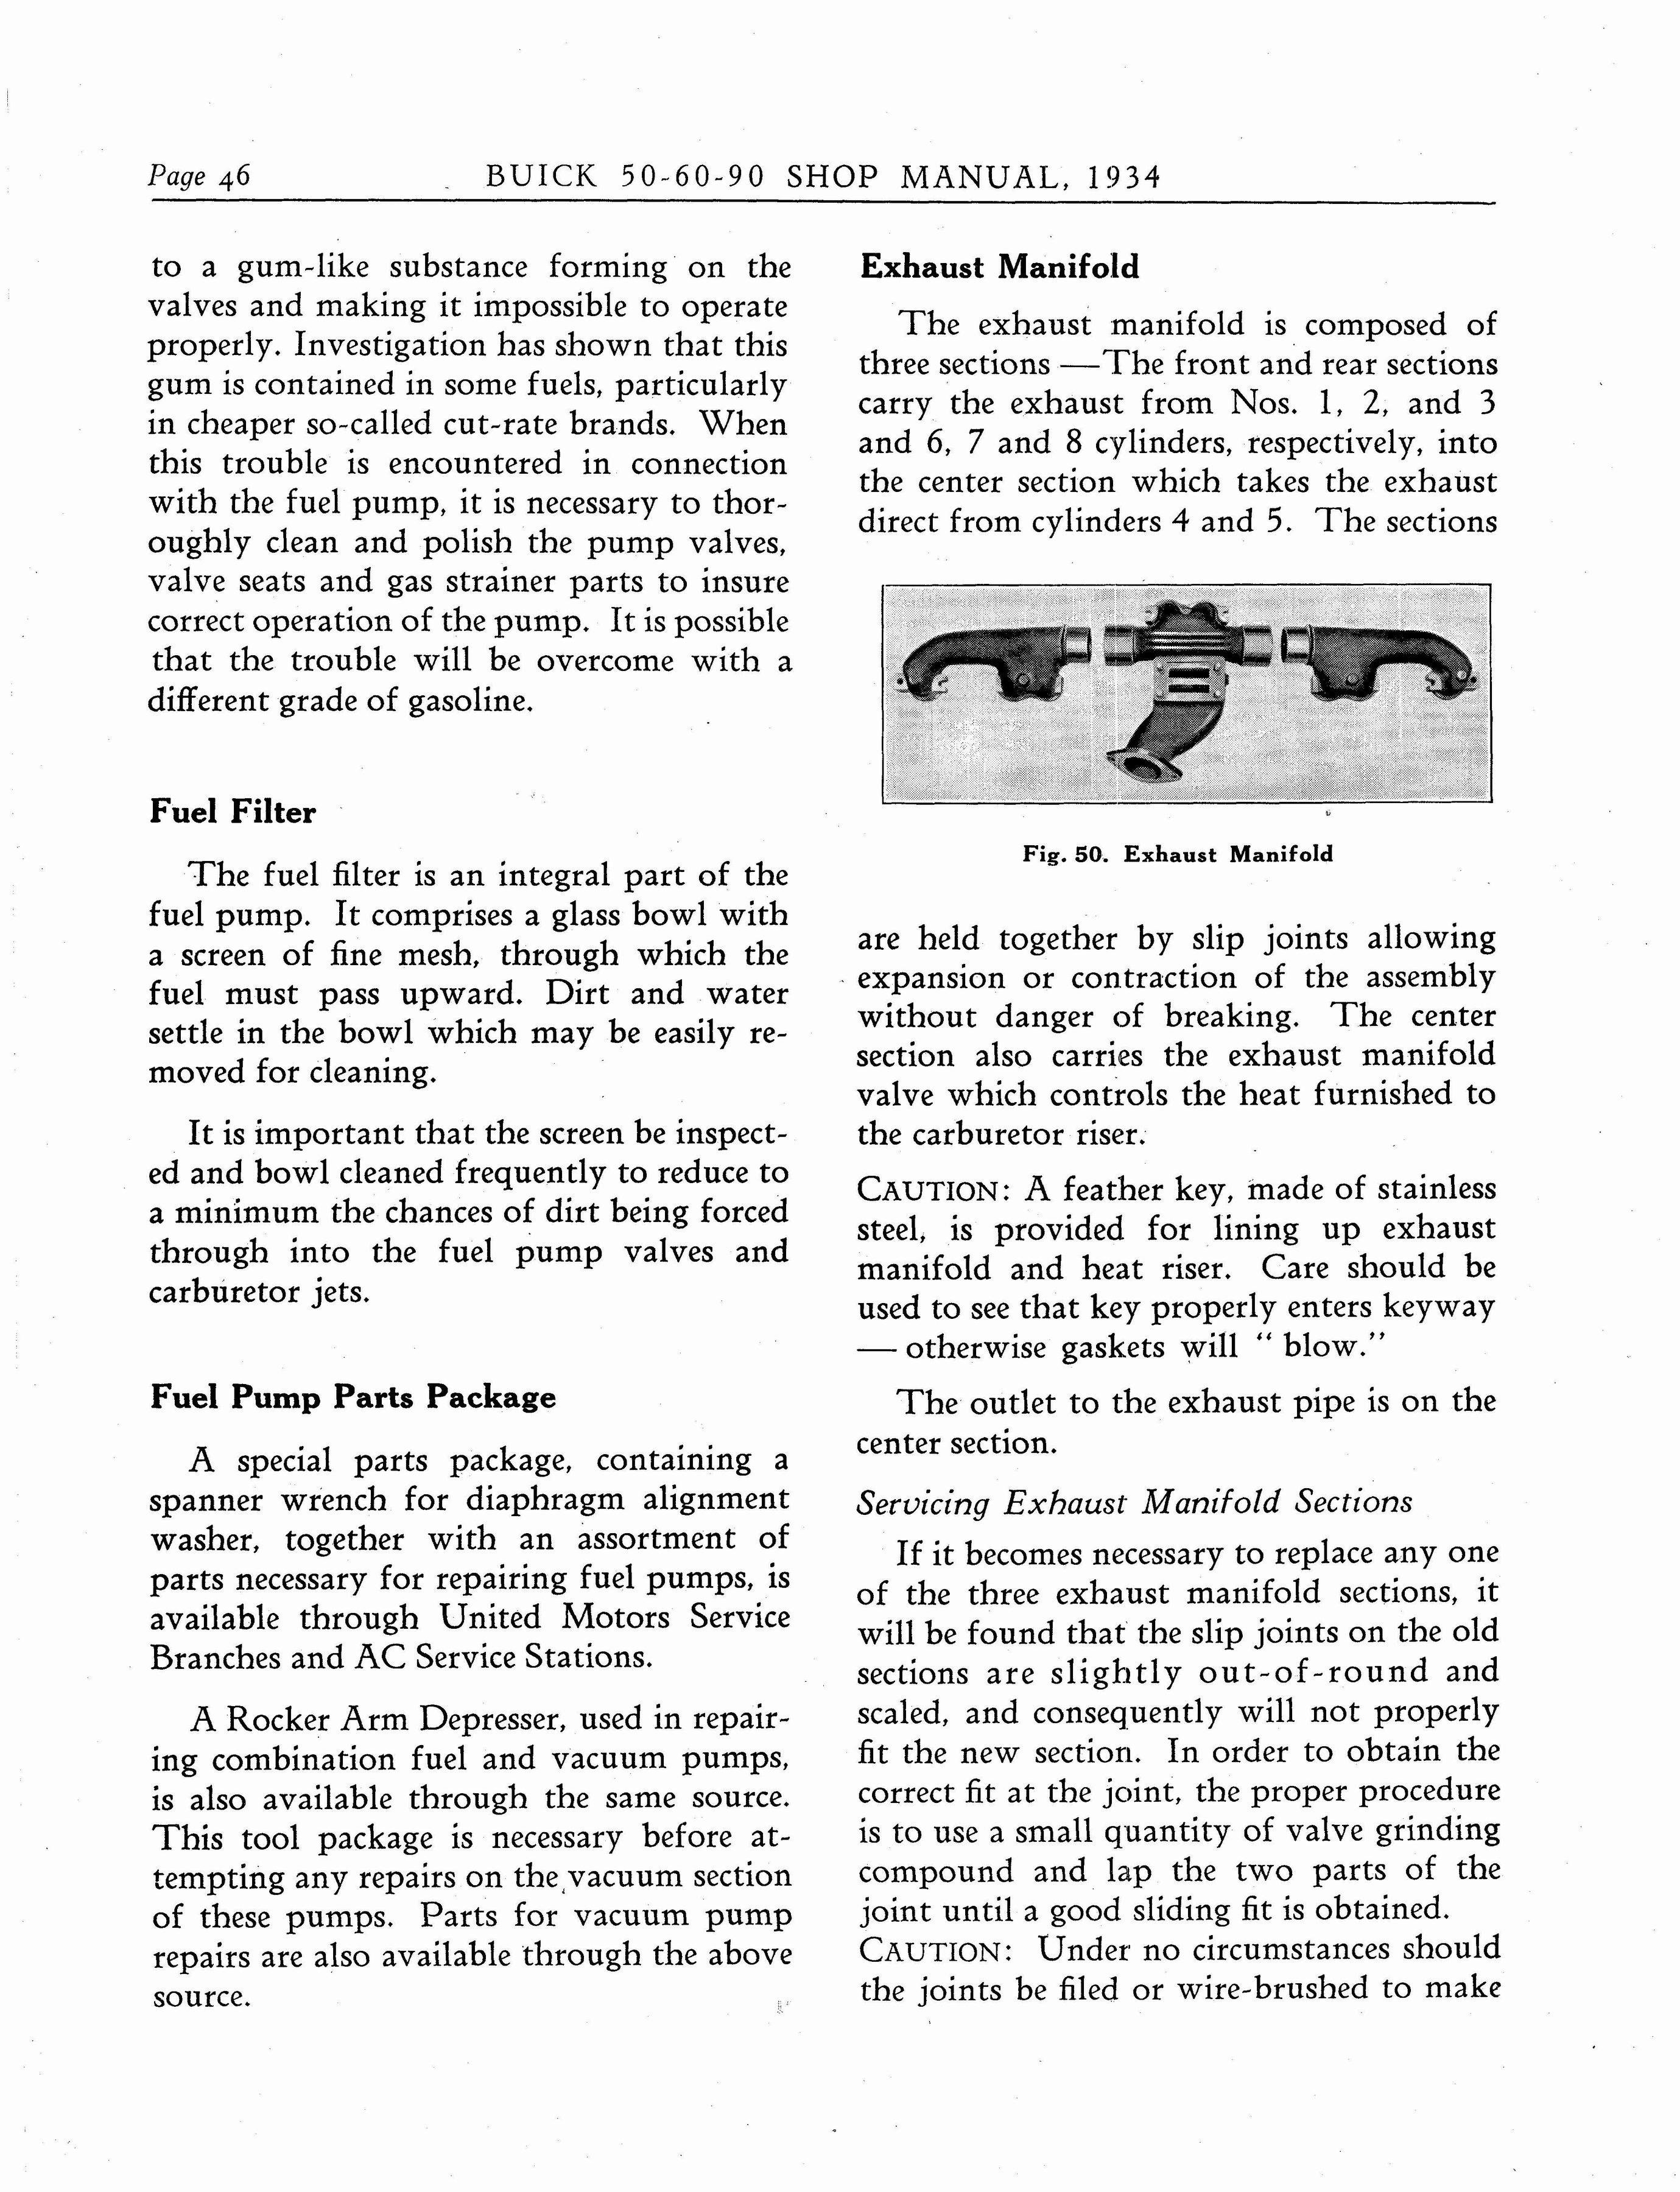 n_1934 Buick Series 50-60-90 Shop Manual_Page_047.jpg